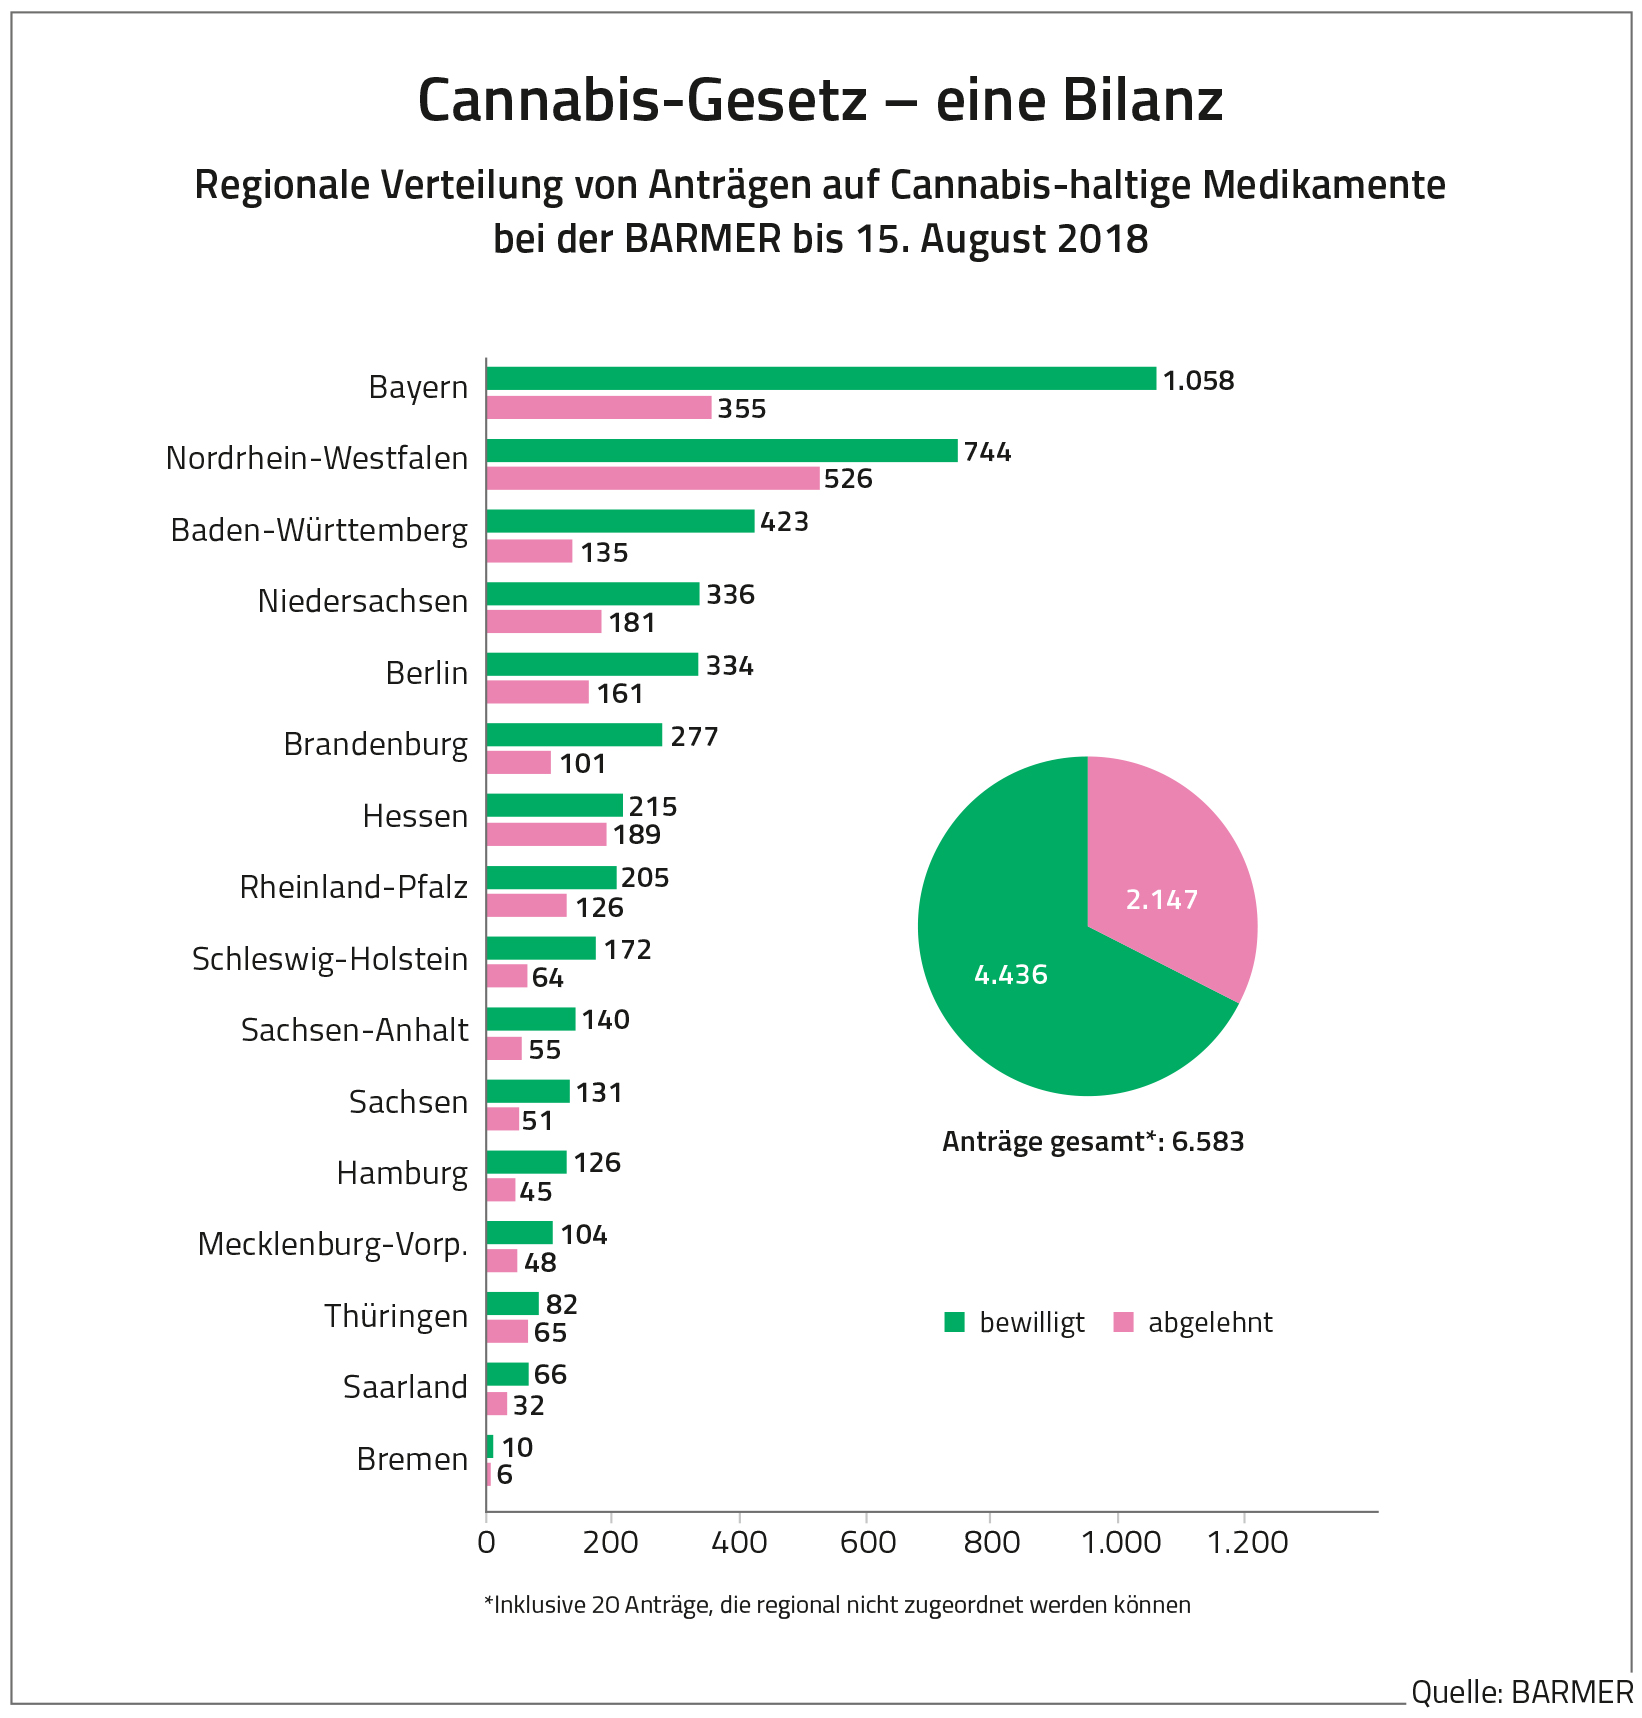 Cannabis-Gesetz - eine Bilanz 2018